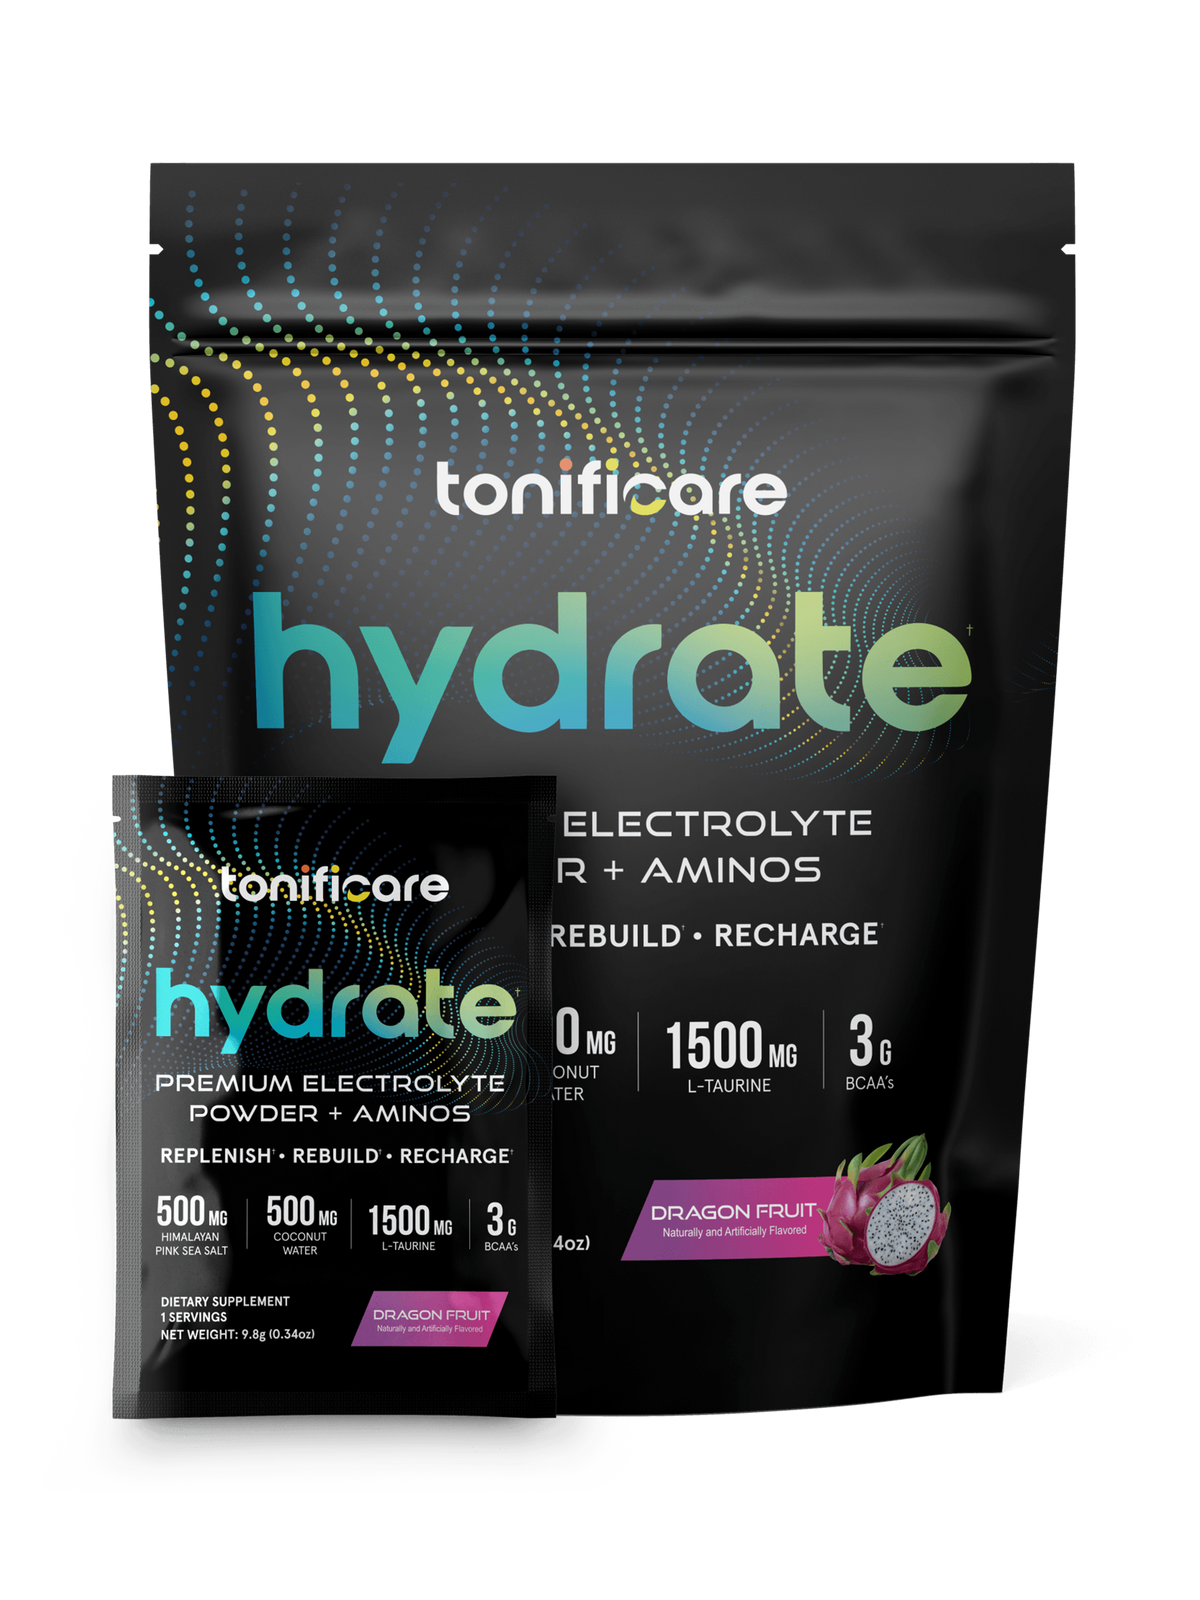 Hydrate Premium Electrolyte Powder + Aminos